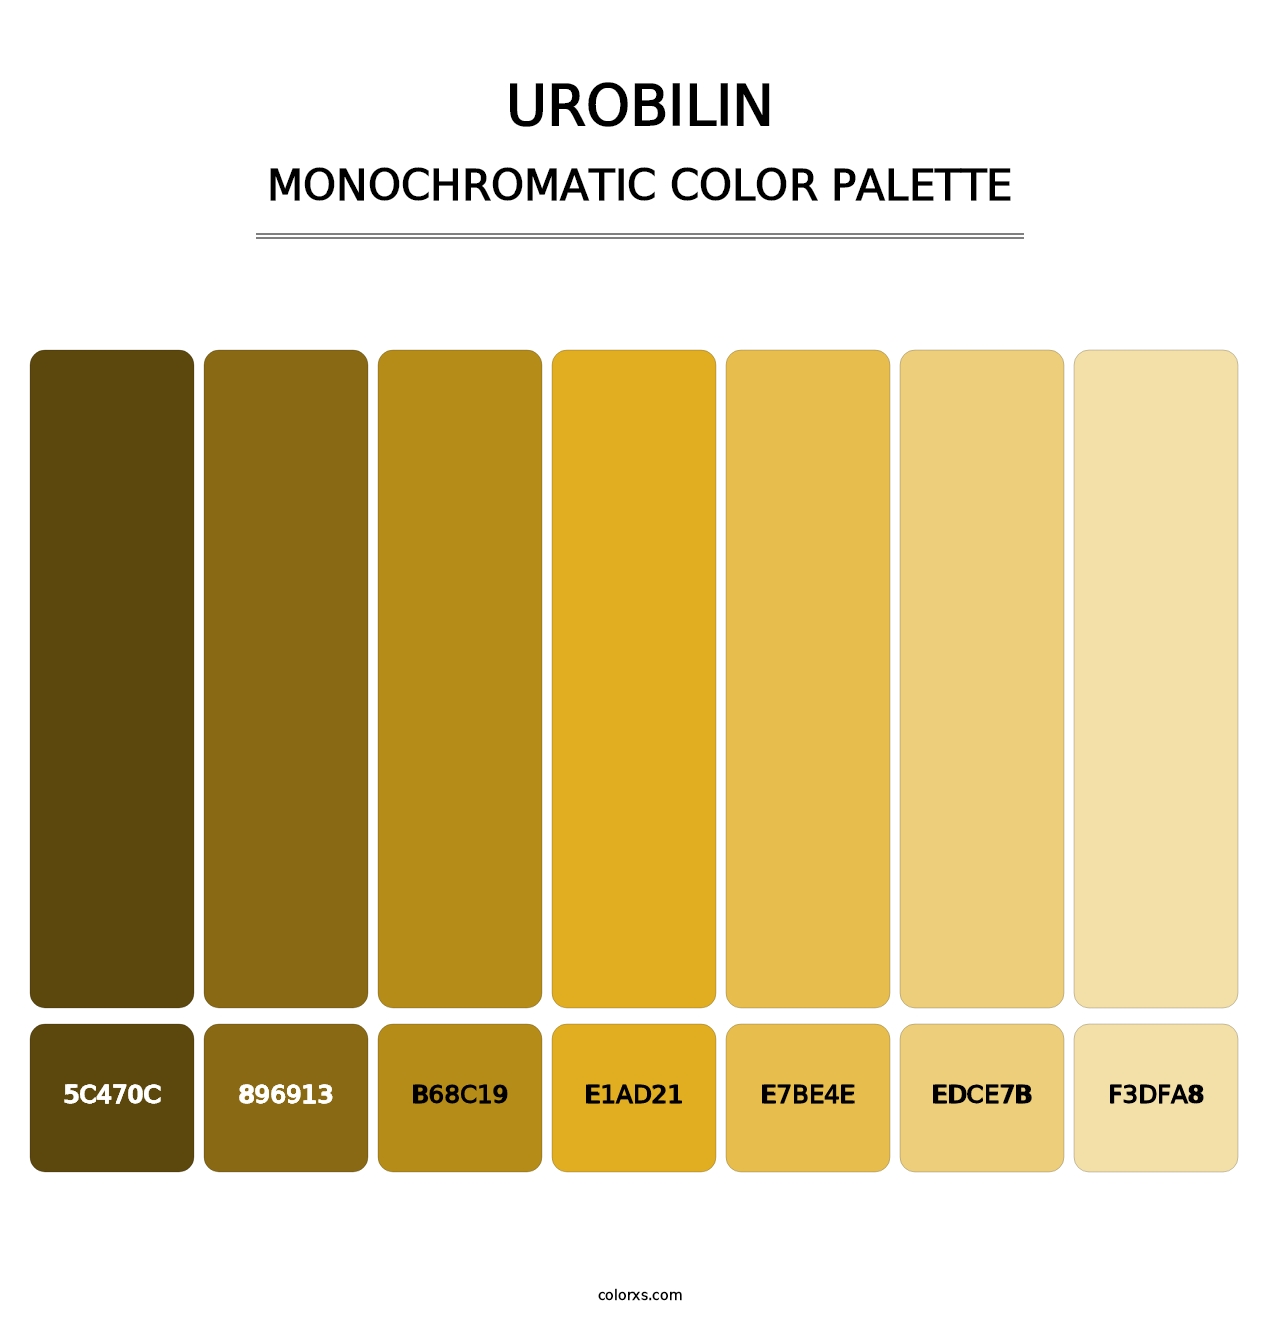 Urobilin - Monochromatic Color Palette